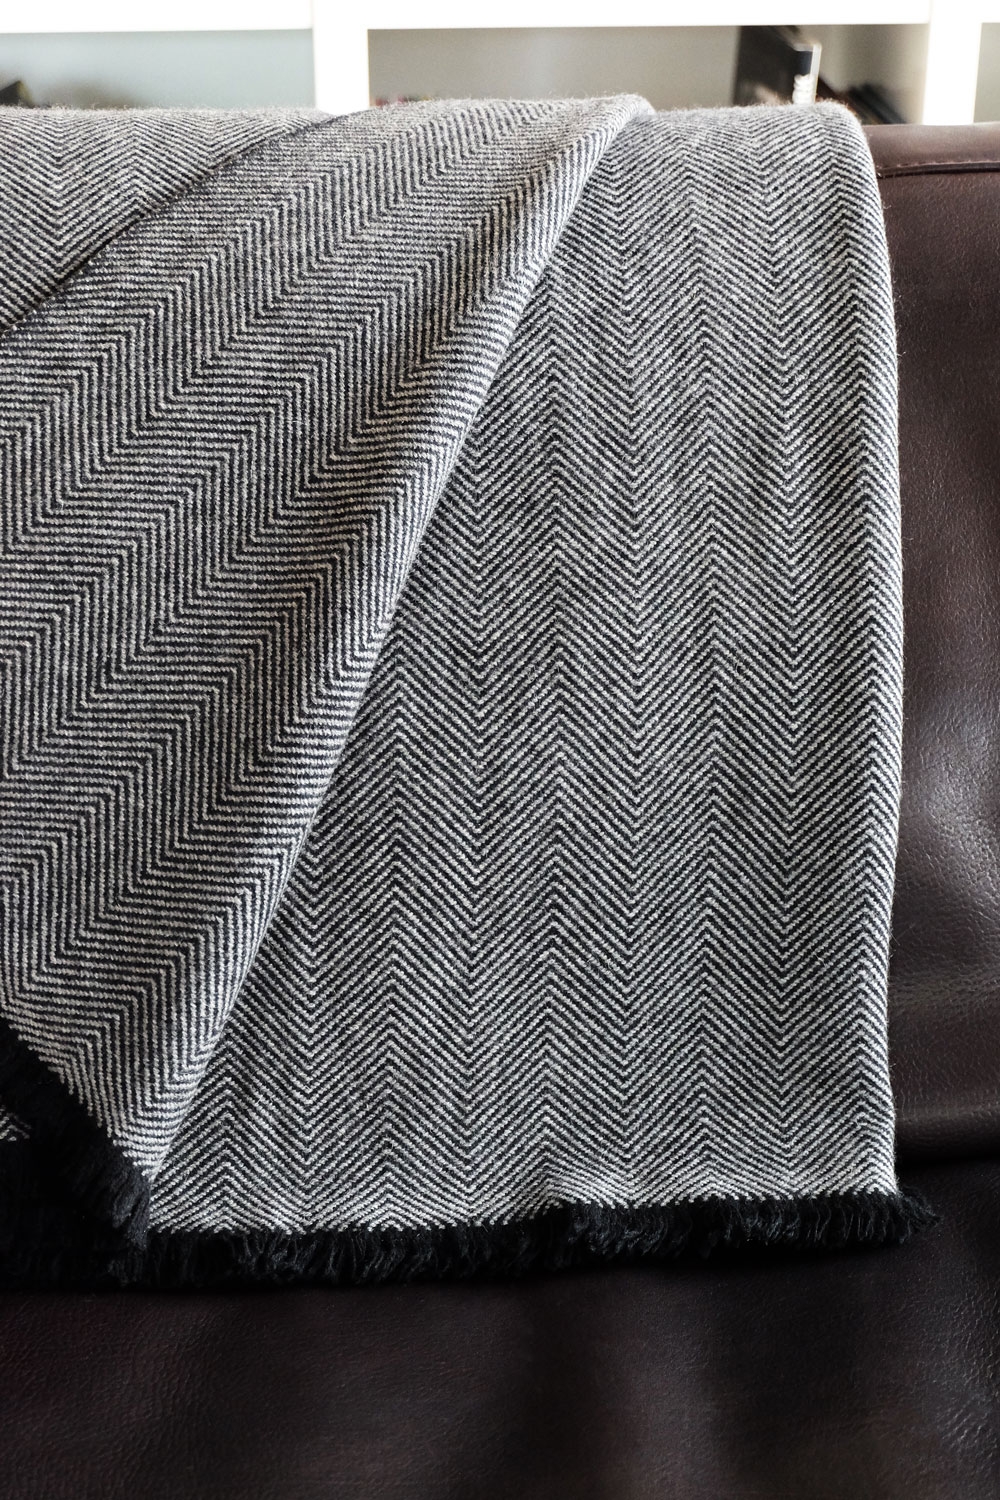 Cashmere accessoires erable 130 x 190 schwarz grau meliert 130 x 190 cm